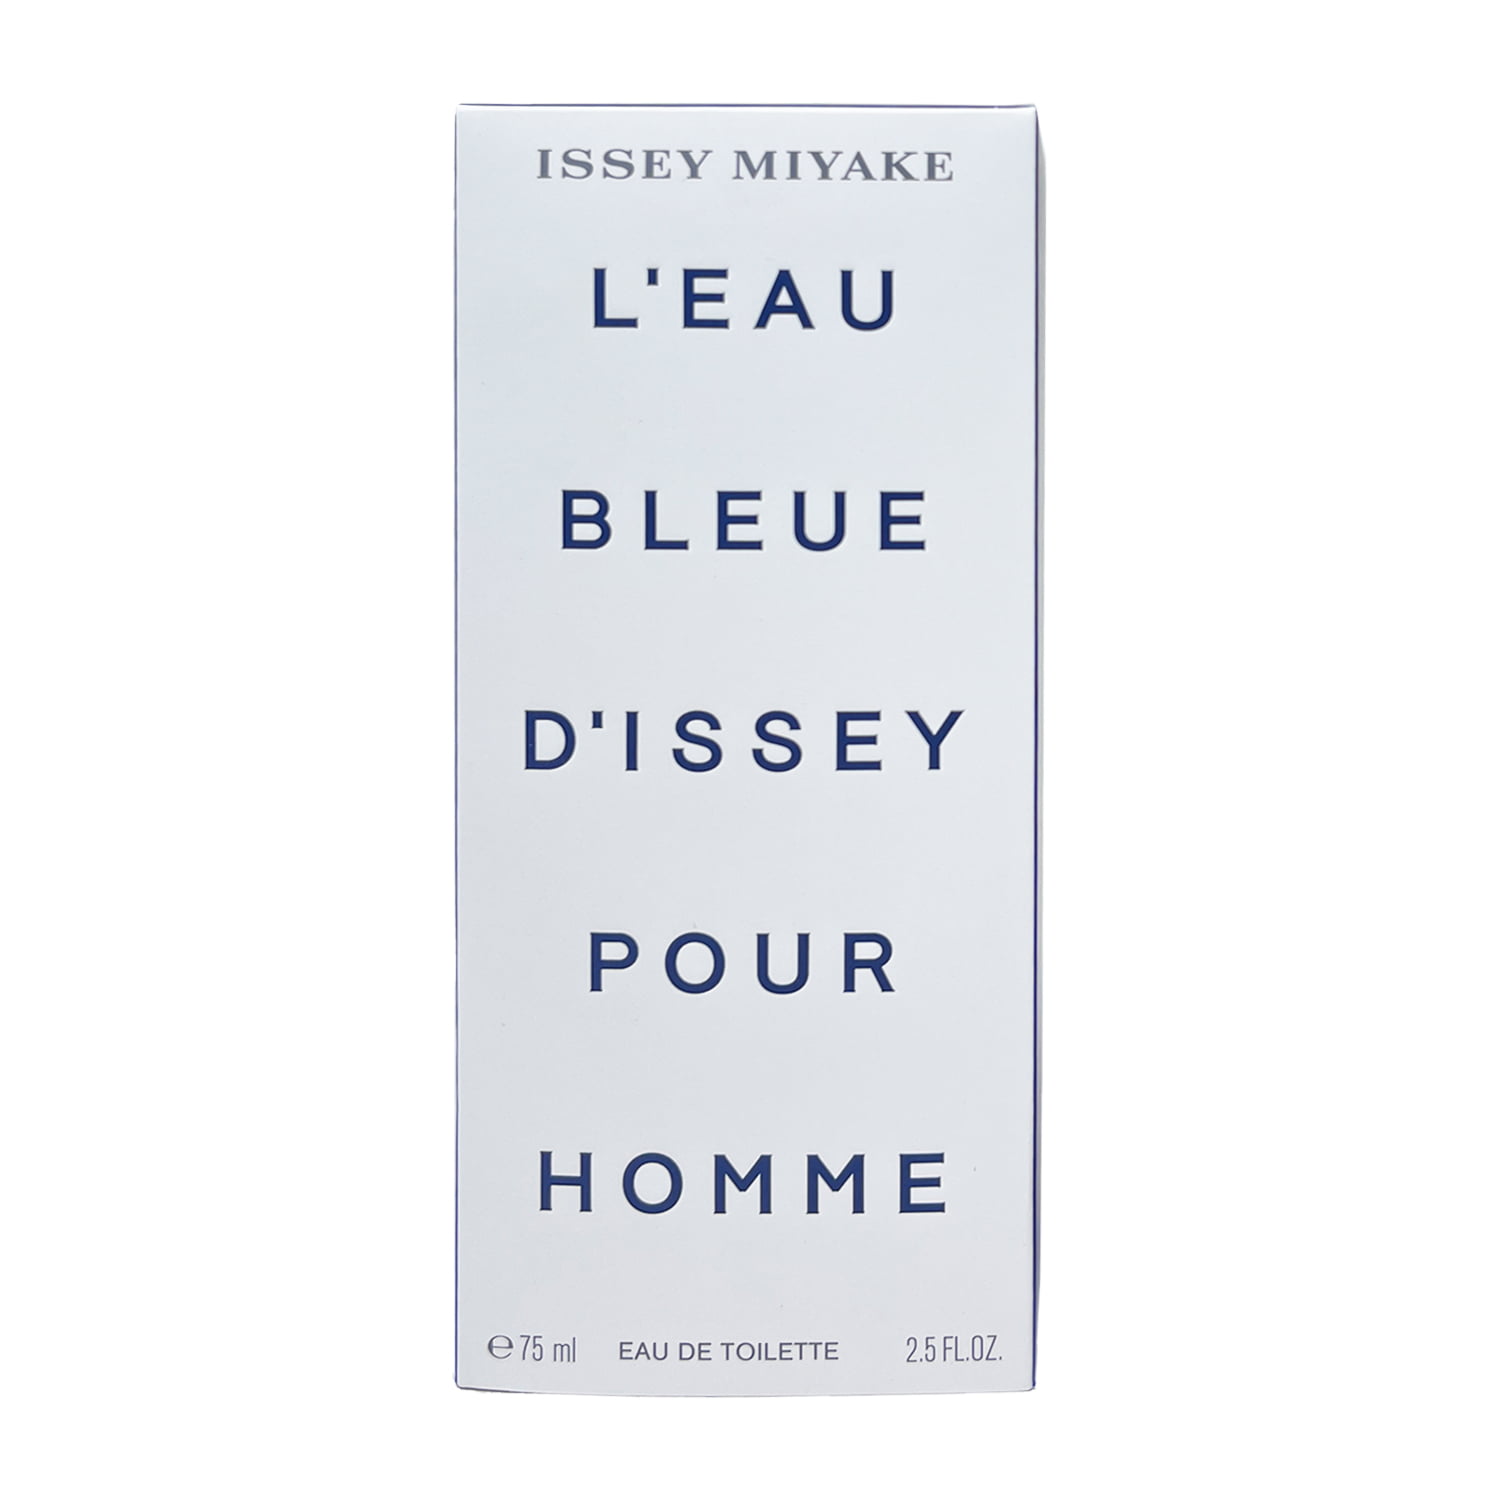 Issey Miyake L'Eau d'Issey Pour Homme Eau de Toilette Spray